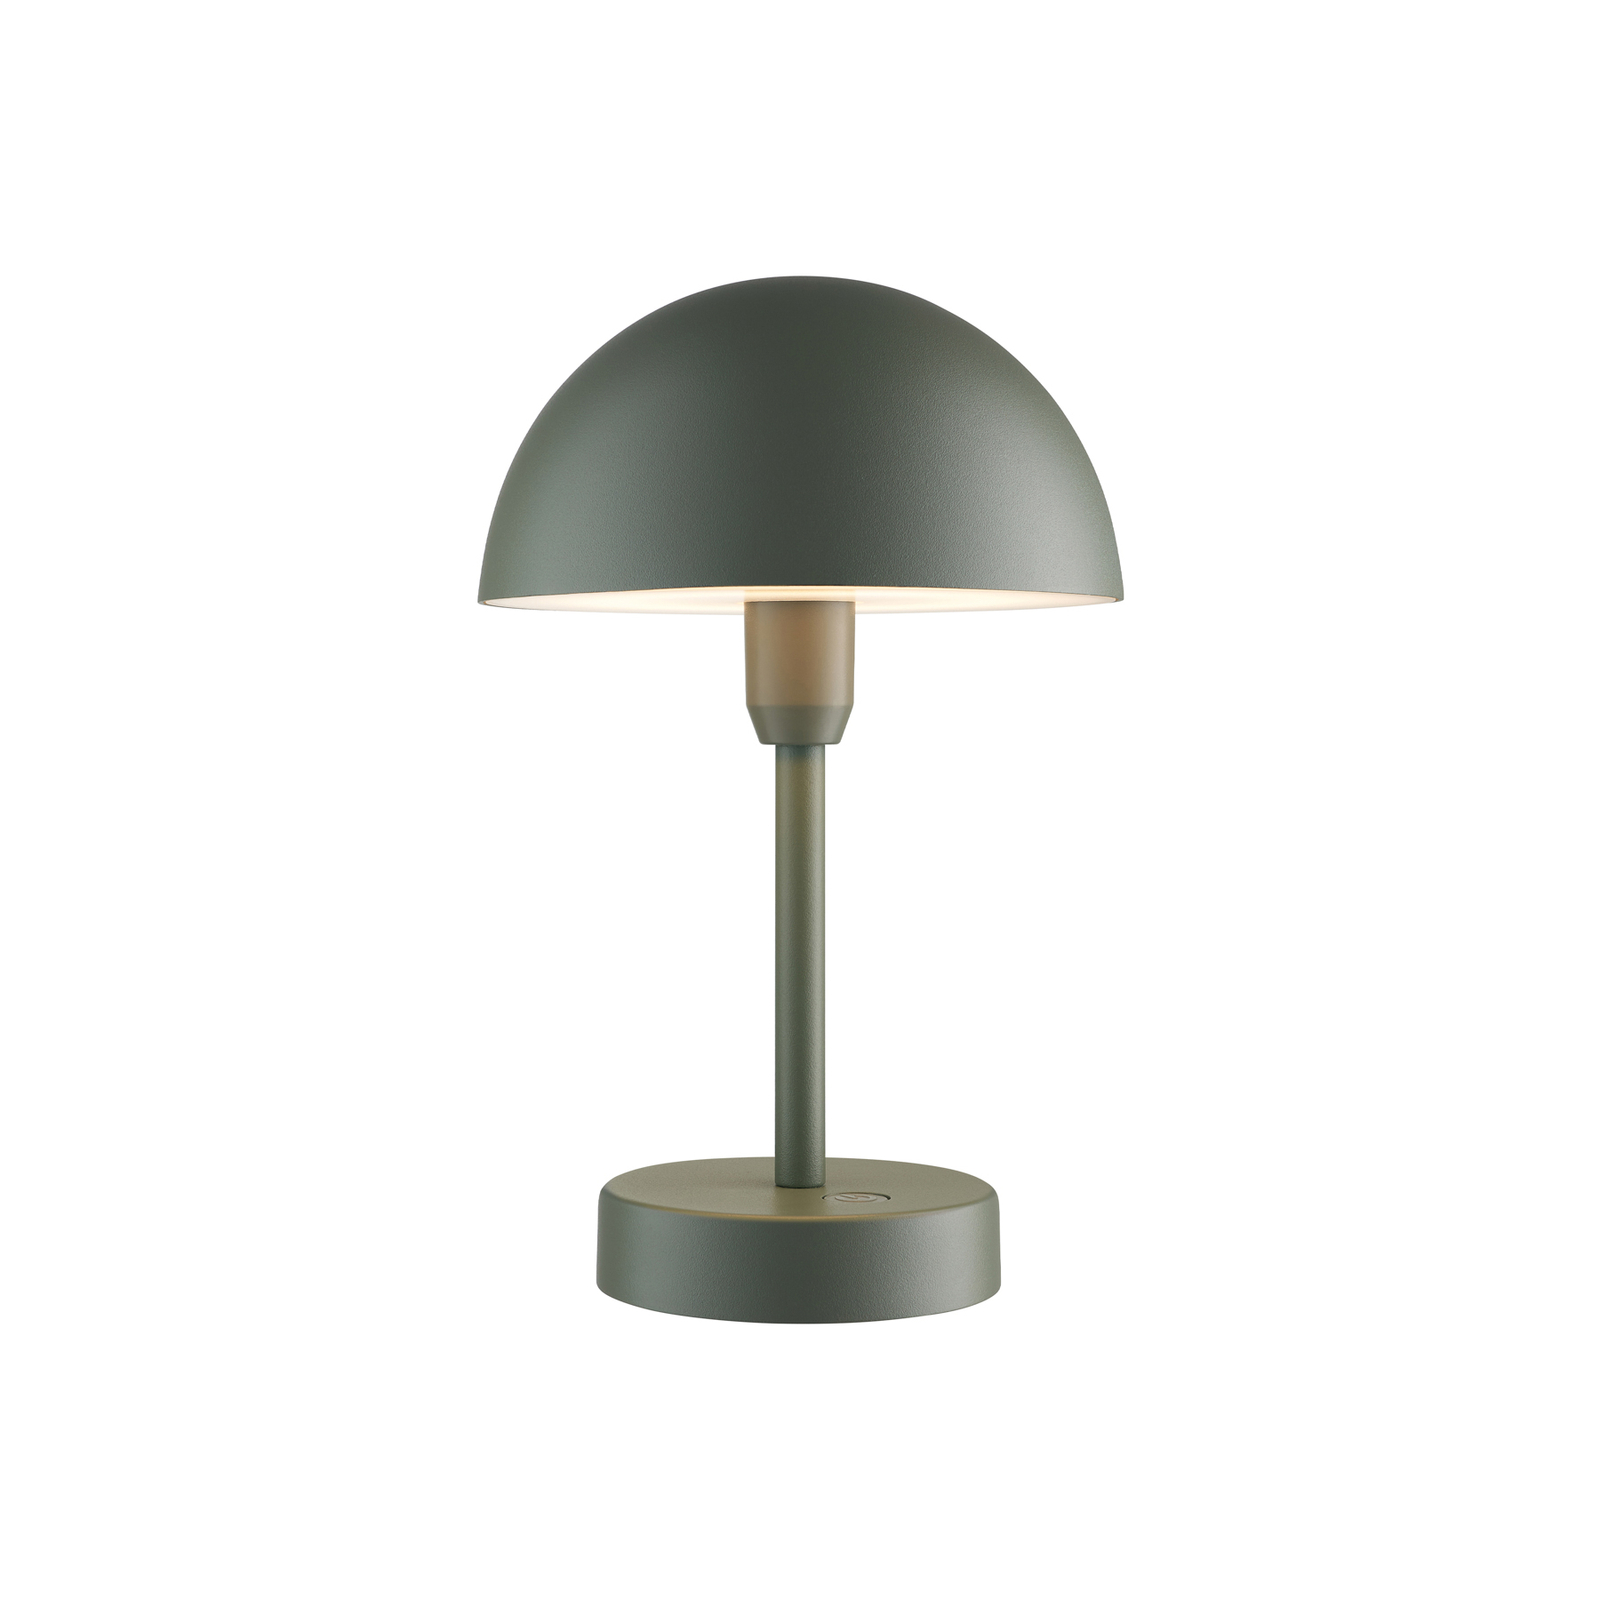 Akumulatorowa lampa stołowa LED Ellen To-Go, aluminium, oliwkowa zieleń